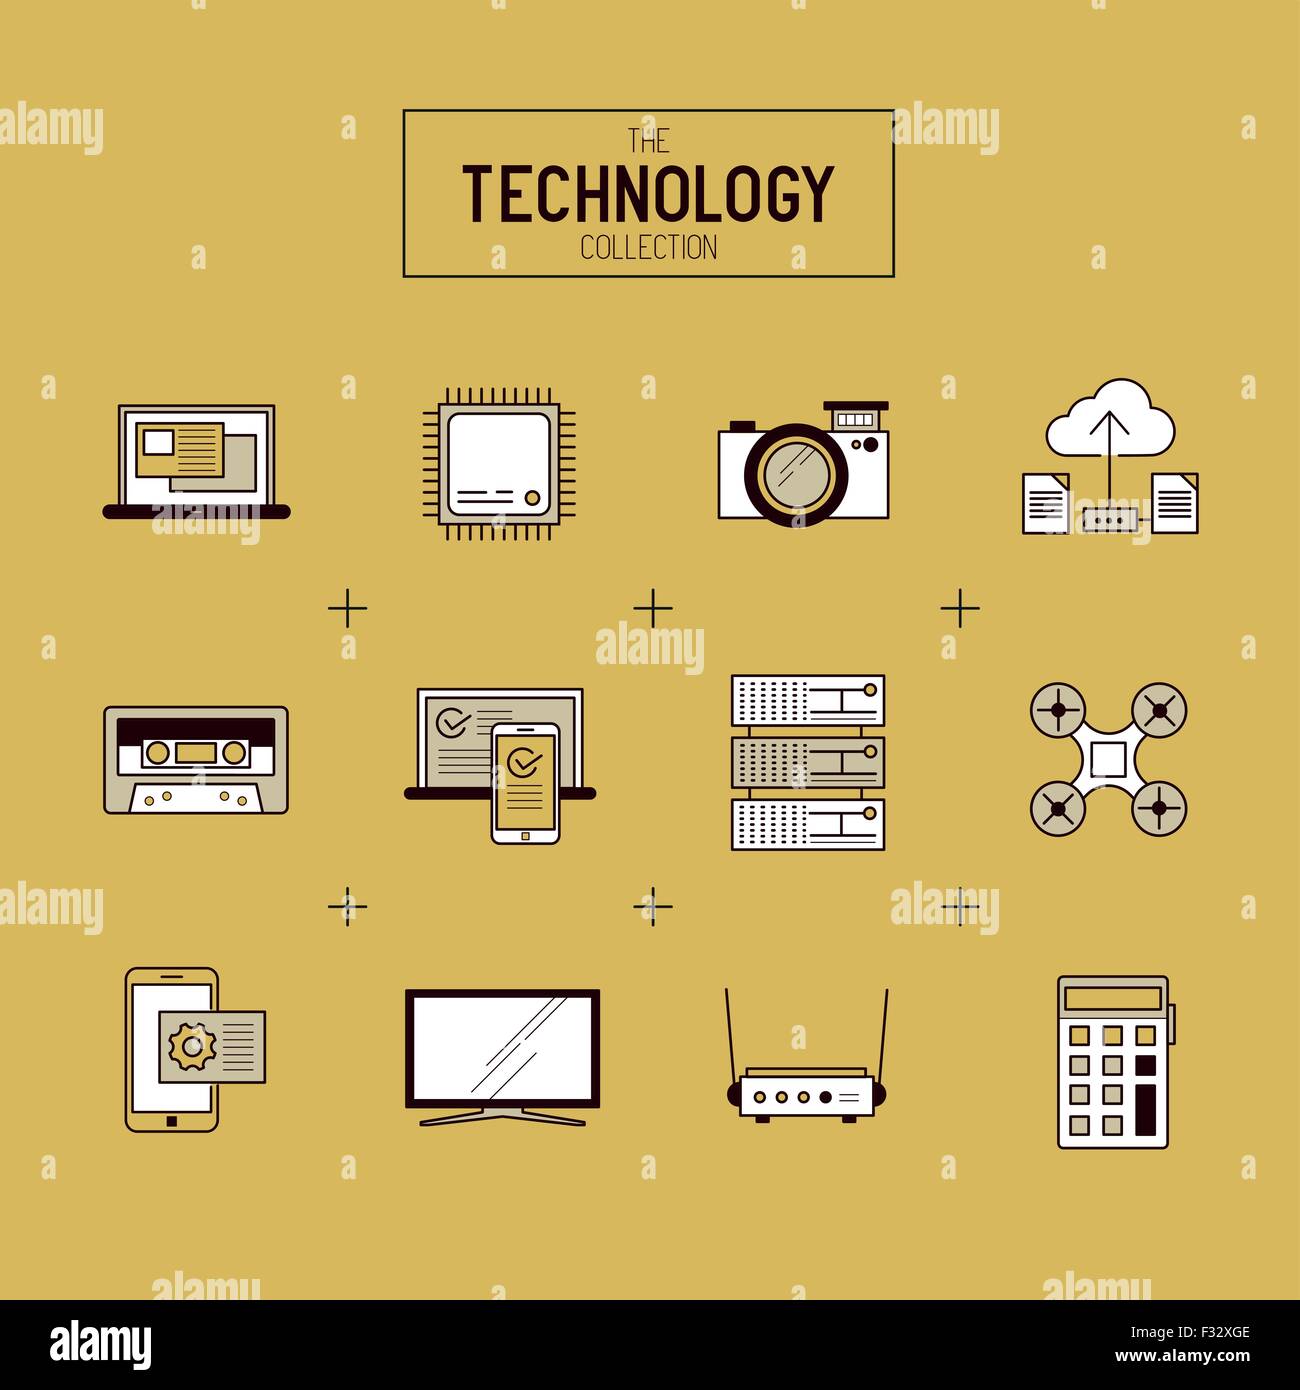 Technologie-Vektor-Icon-Set. Eine Sammlung von gold moderner Technologie Elemente wie eine CPU, Drohne, TV und mobile Geräte. Stock Vektor